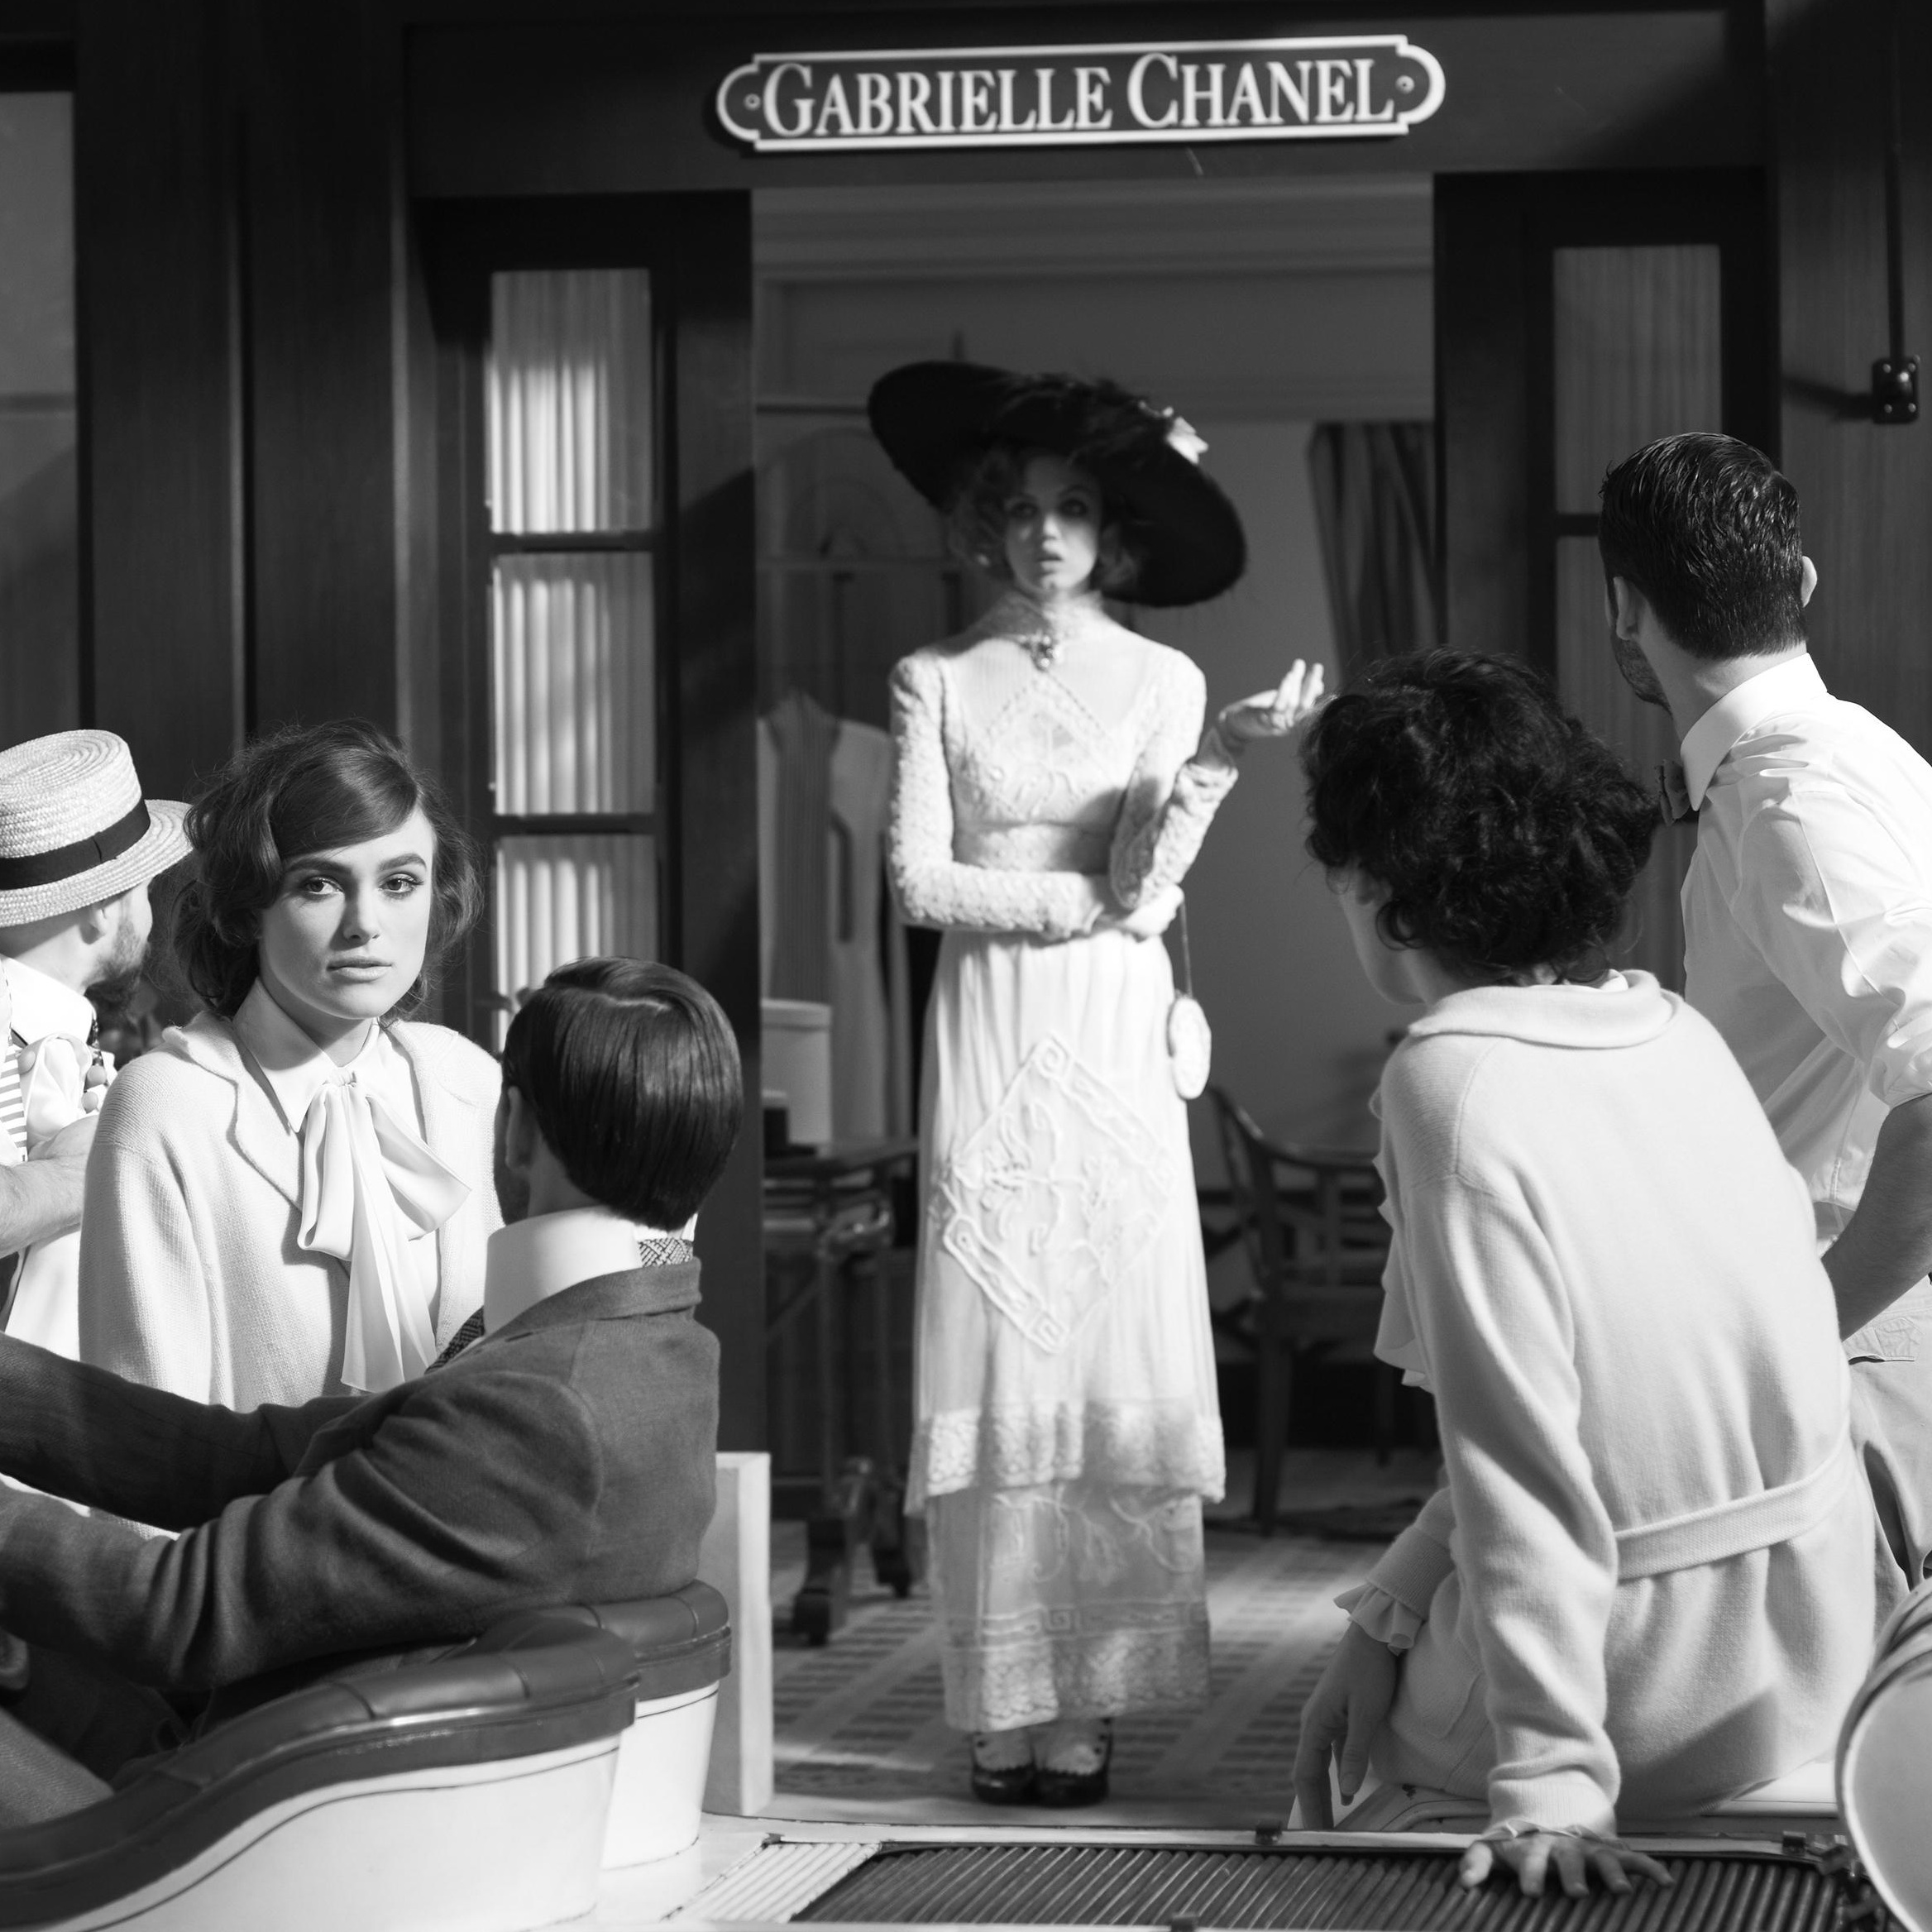 El verano de Chanel: Once upon a time…